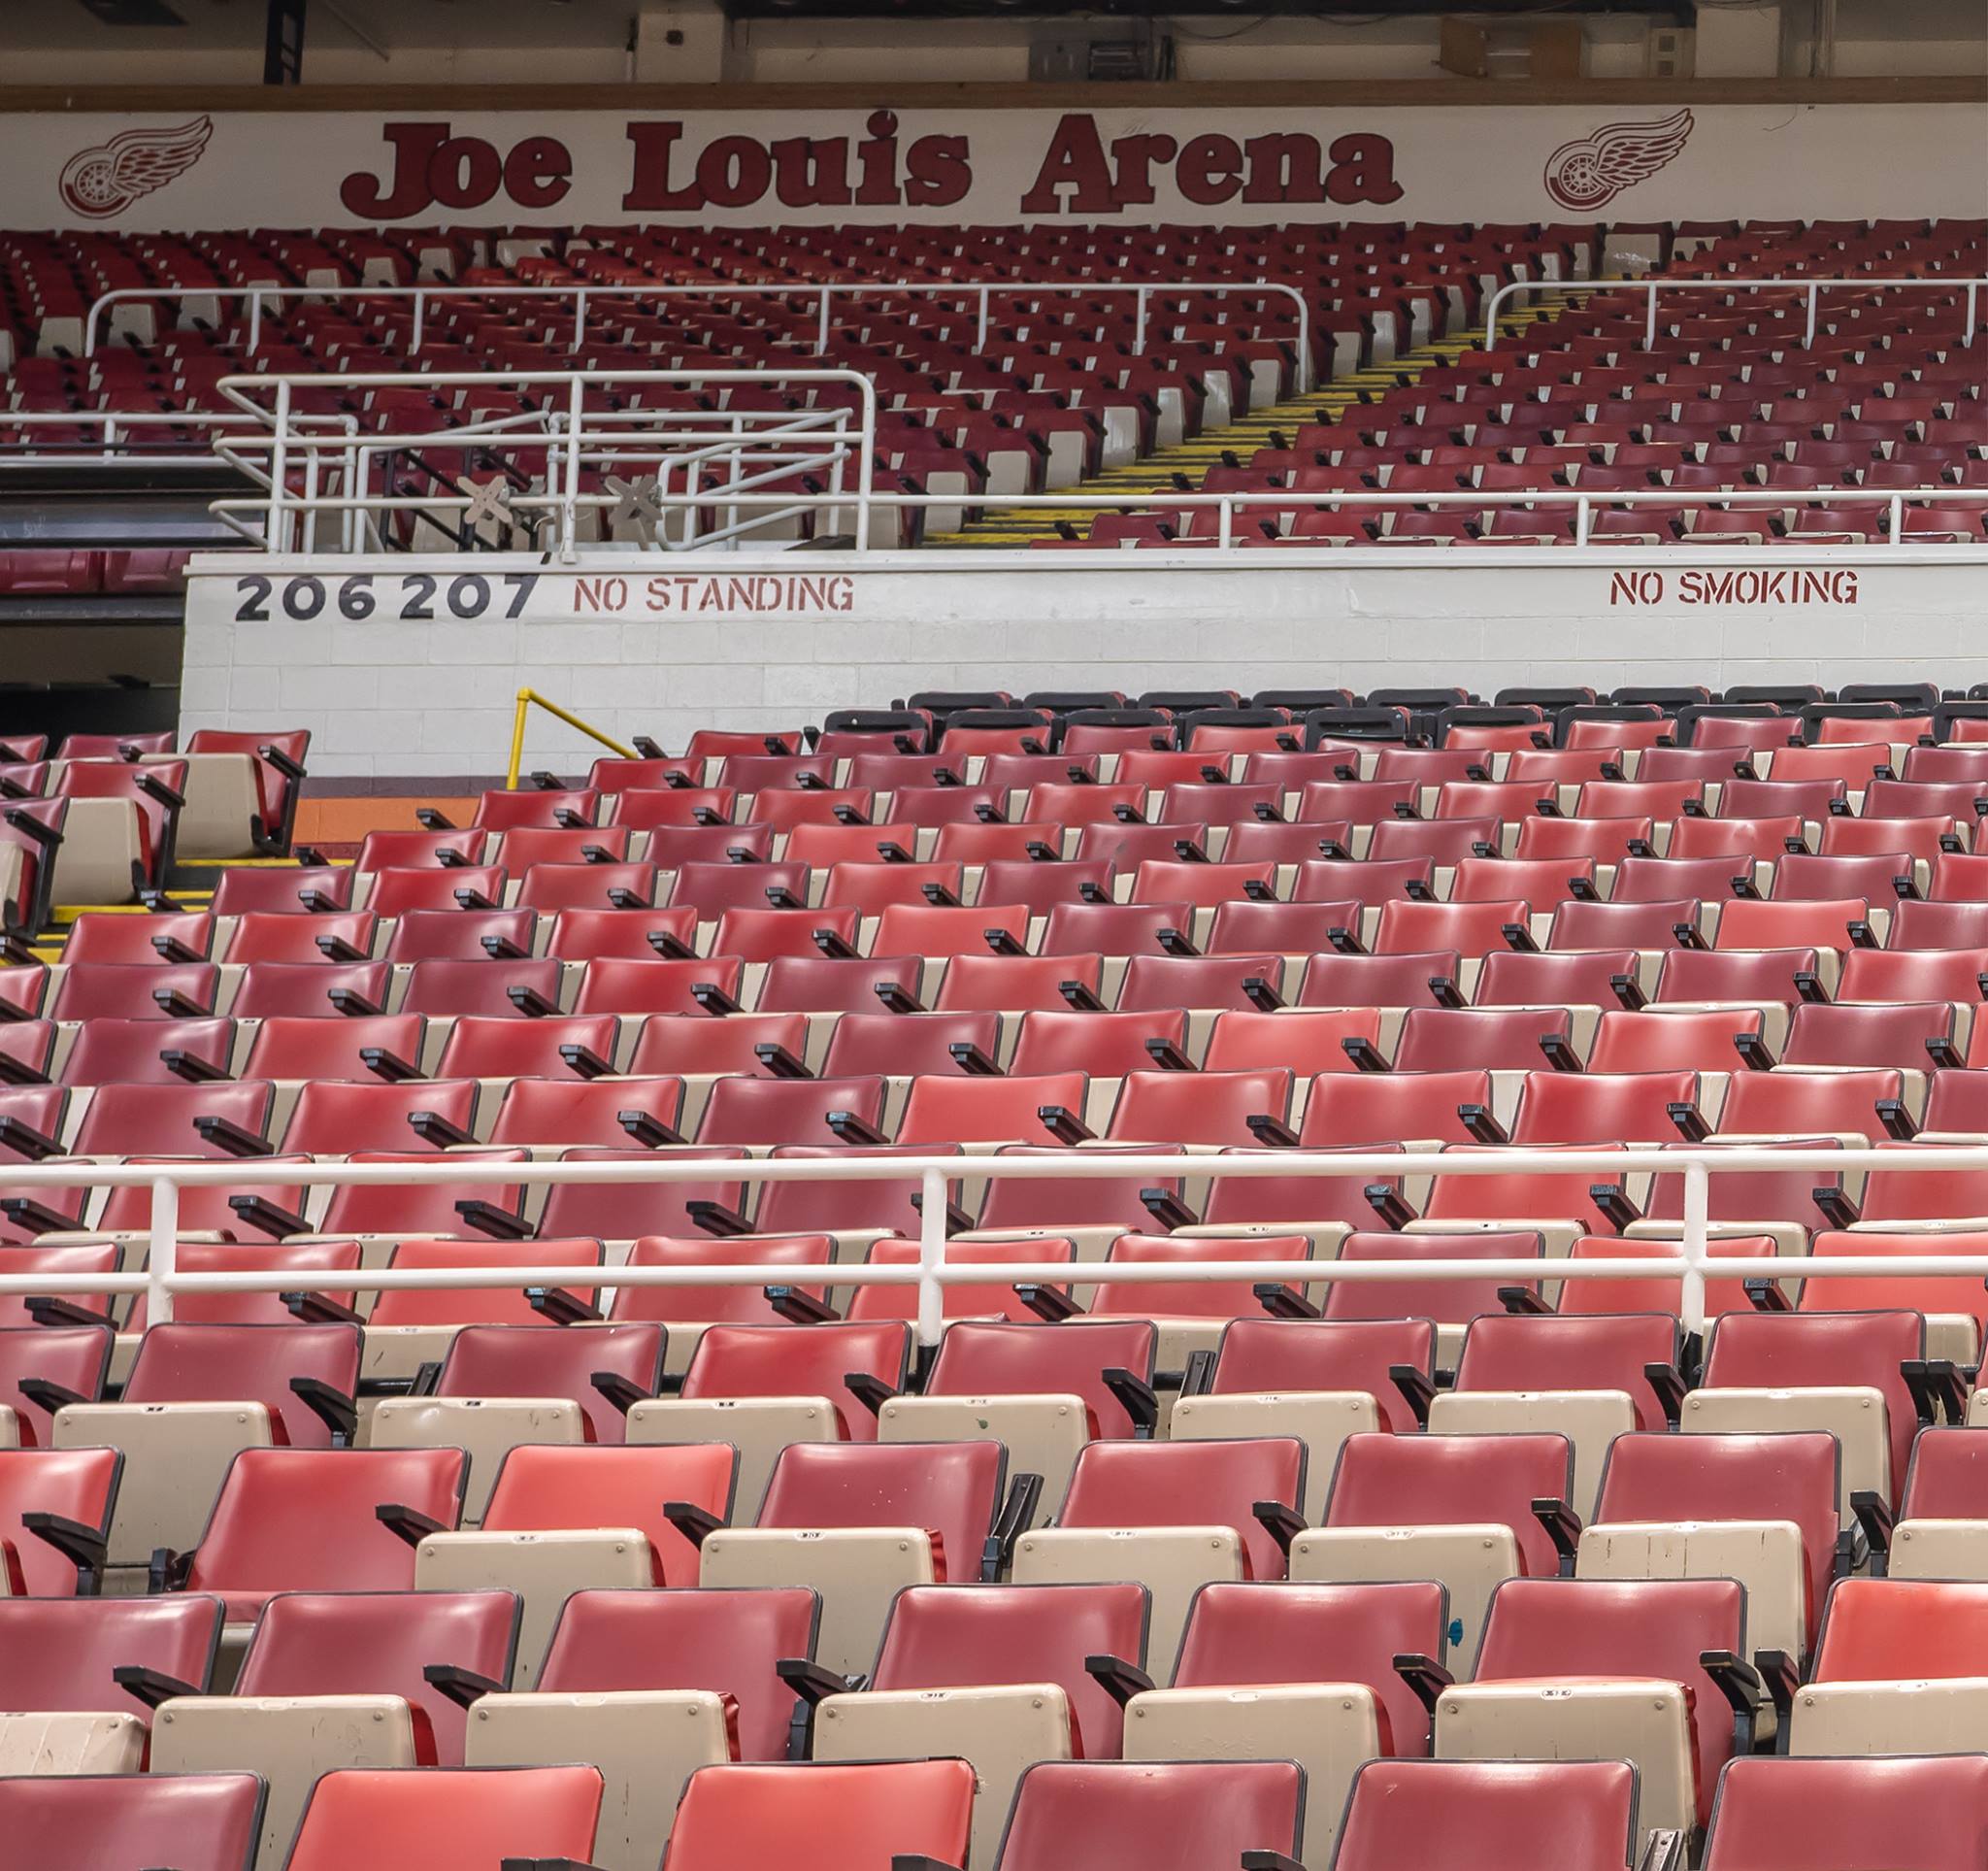 Sale begins on Joe Louis Arena seats